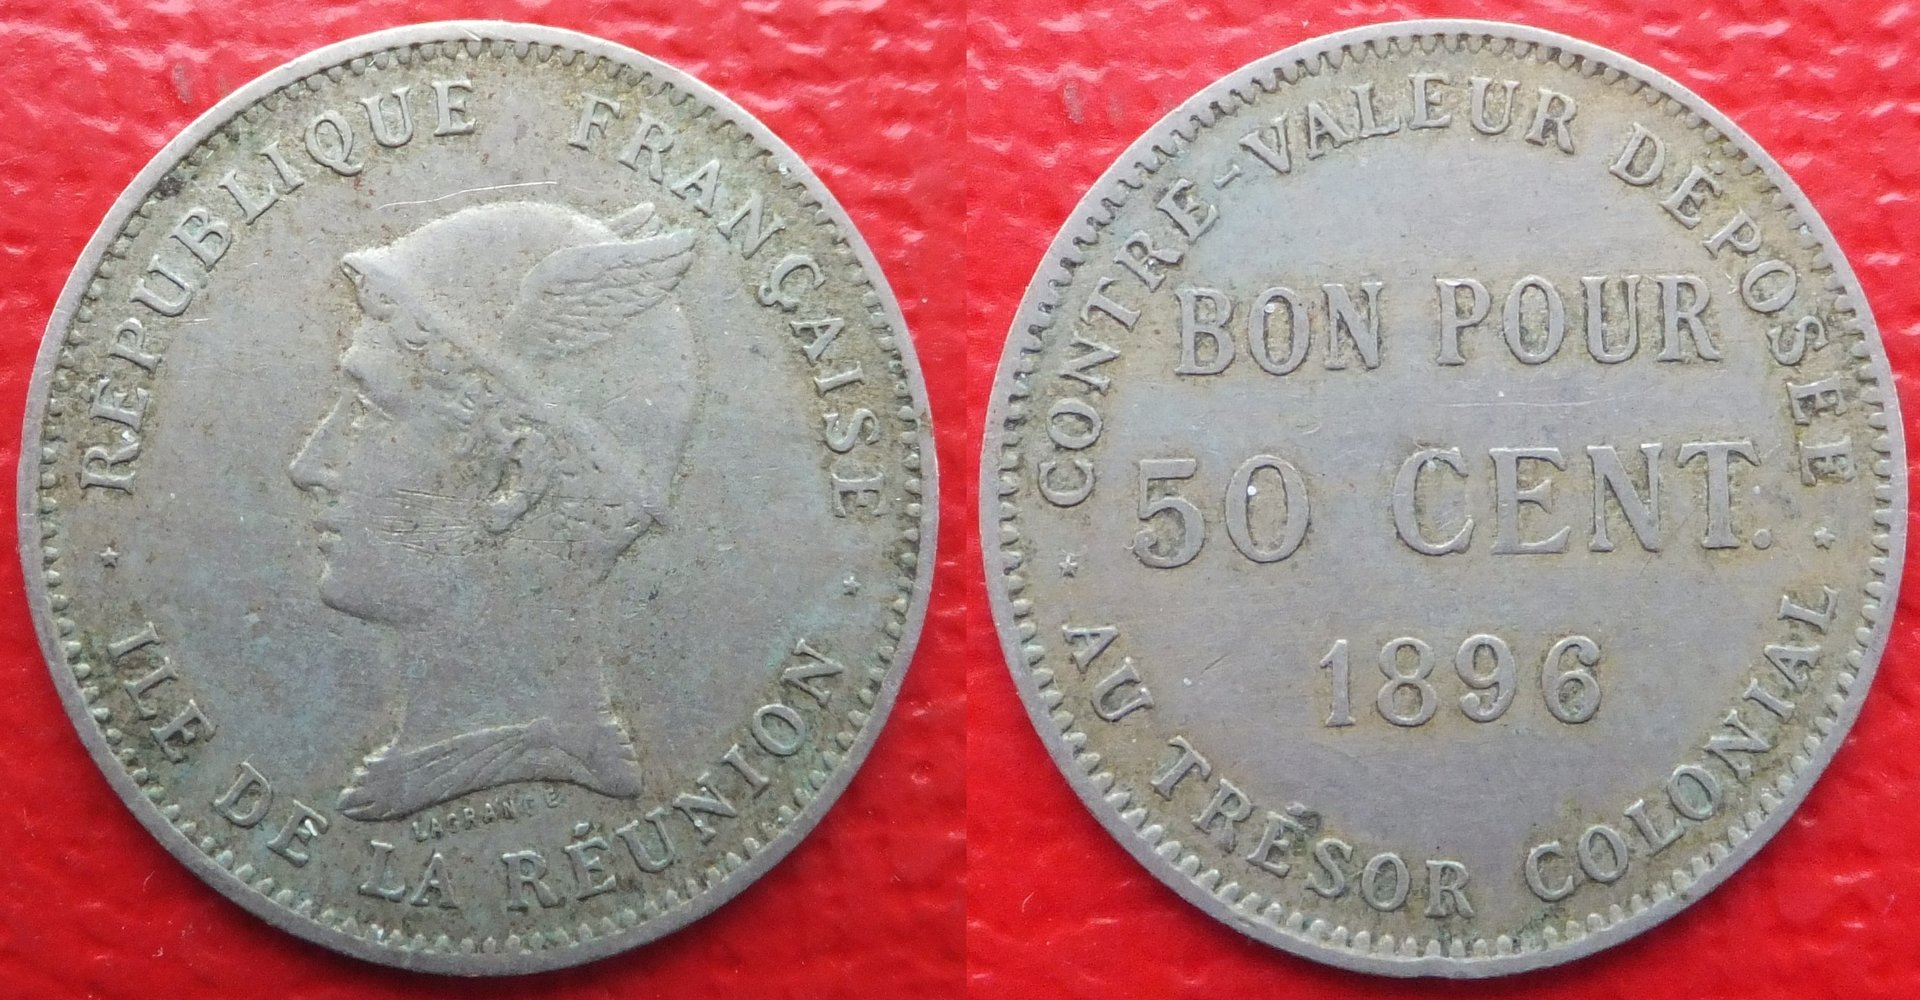 France Réunion Island 50 centimes 1896 (3).jpg